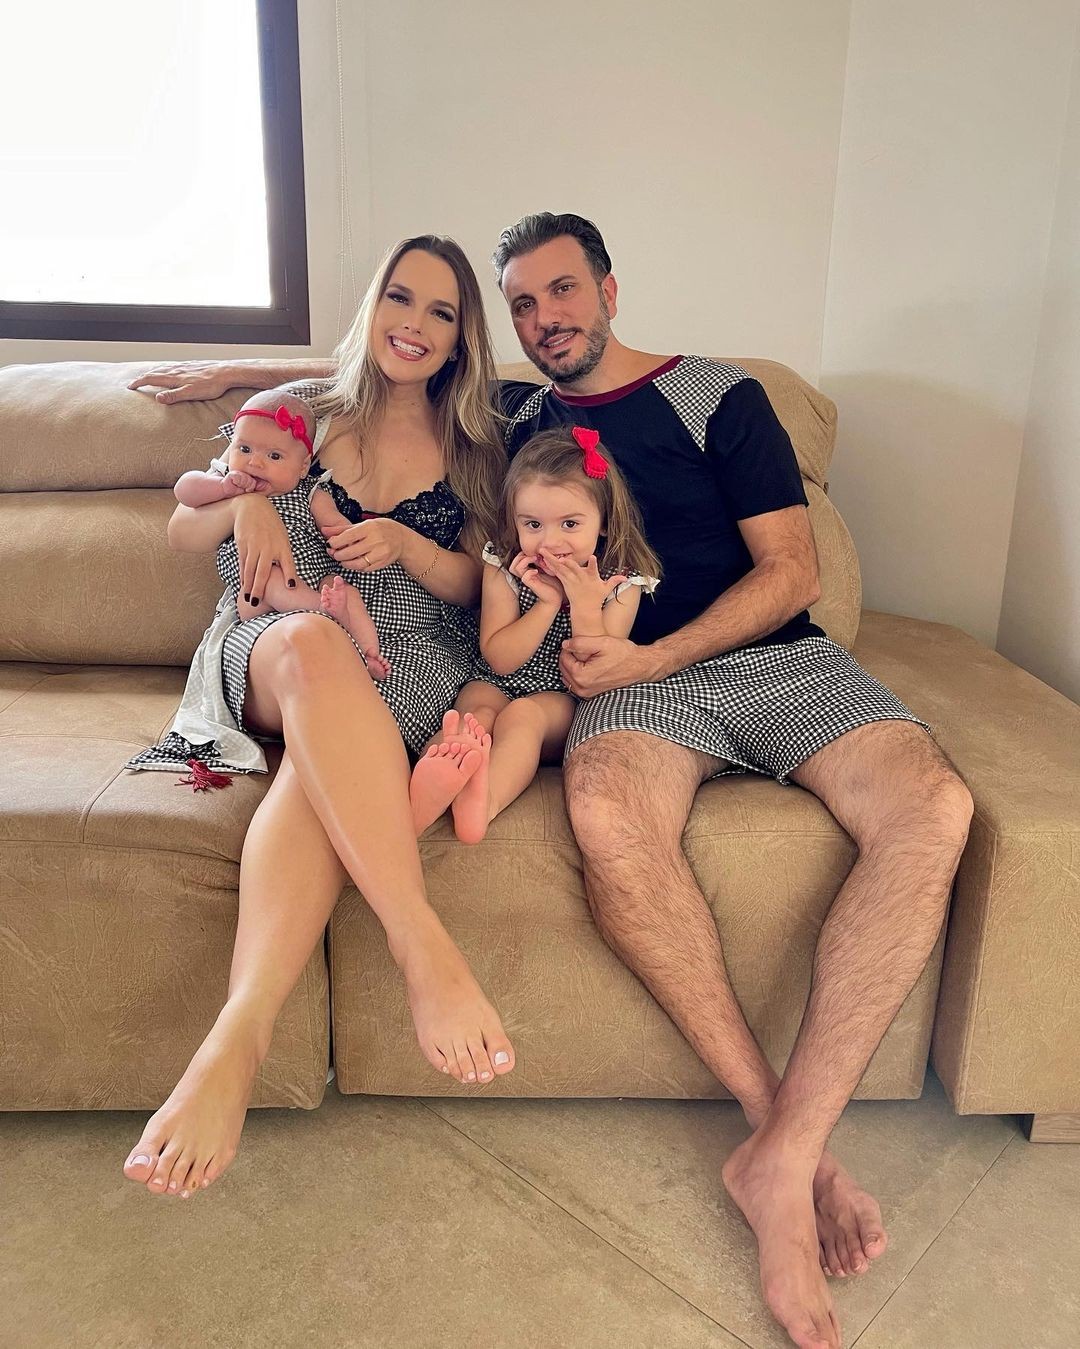 Thaeme posa com as filhas, Liz e Ivy, e o marido, Fábio Elias, em foto com look combinando (Foto: Reprodução / Instagram)